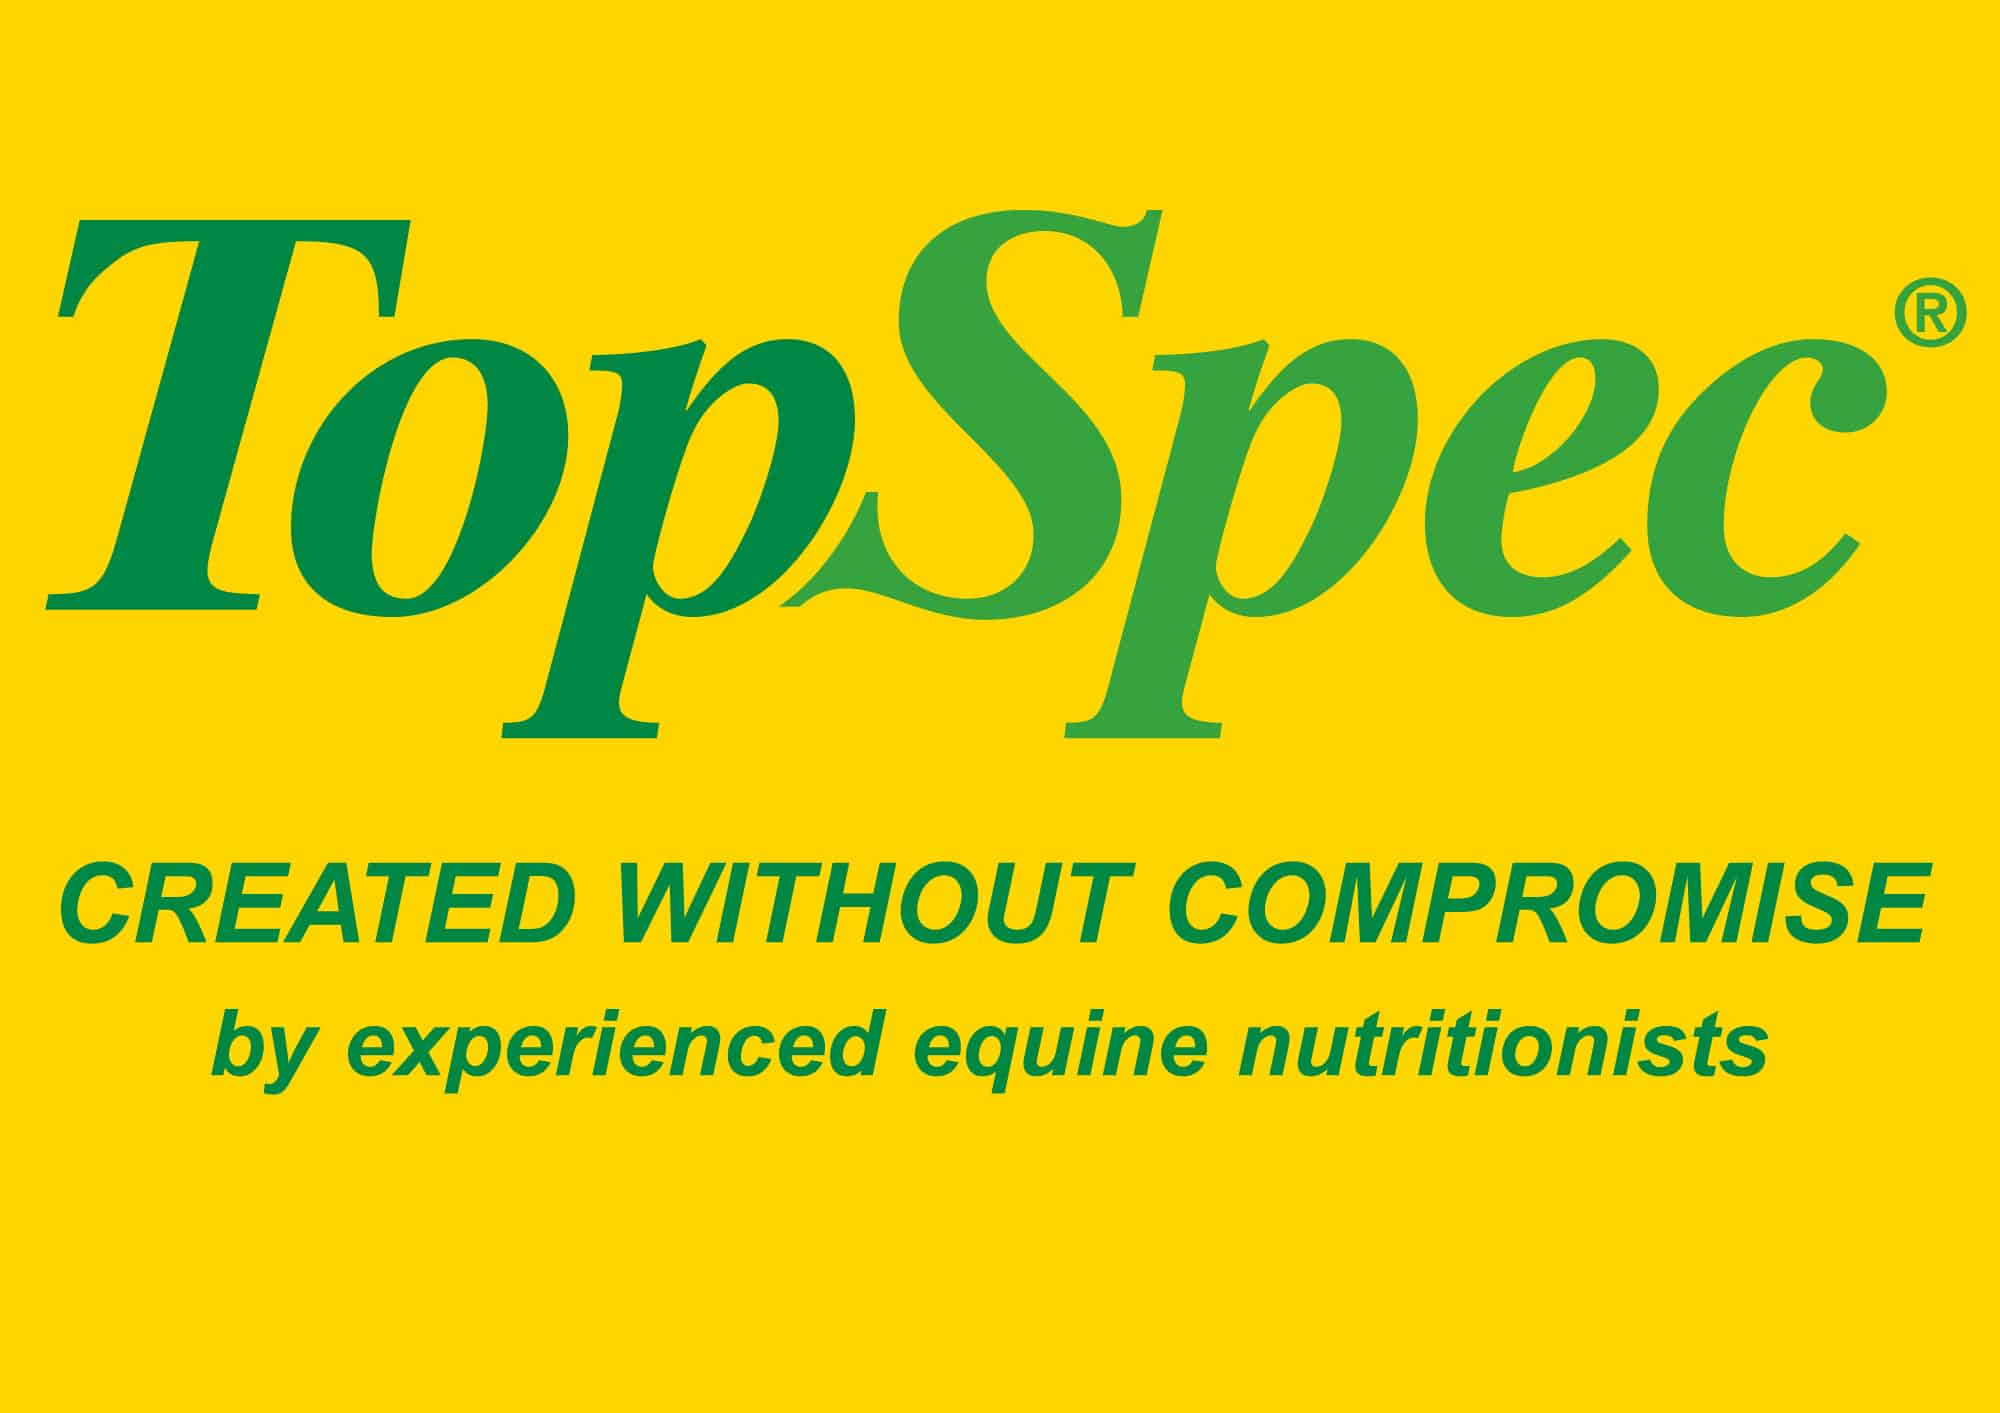 topspec logo strapline also